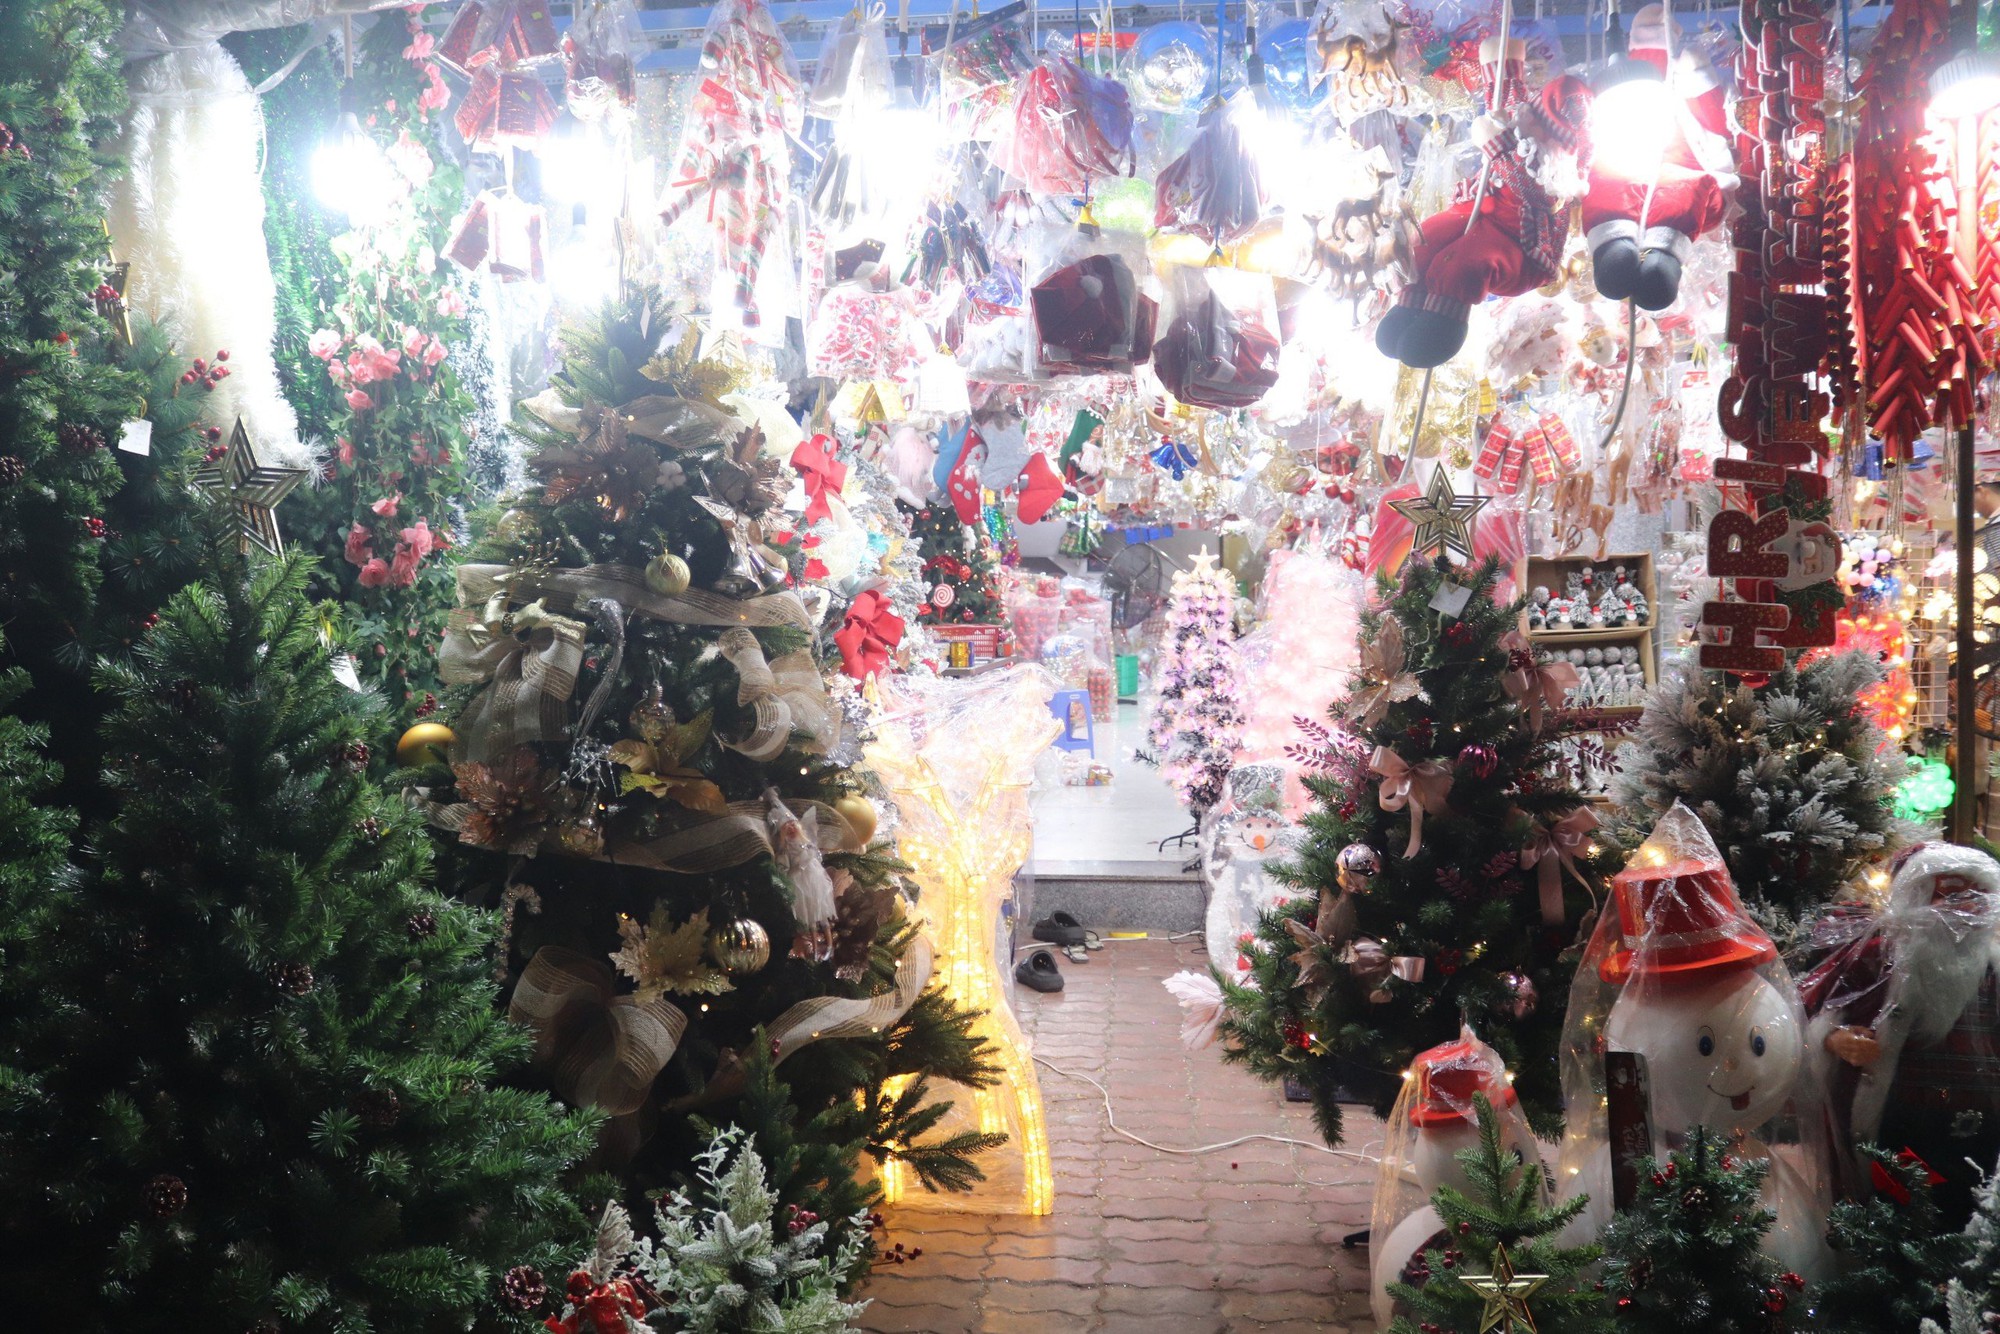 Người dân mua sắm Giáng sinh sớm, chợ đồ trang trí lớn nhất Sài Gòn sáng đèn từ đầu tháng 11 - Ảnh 5.